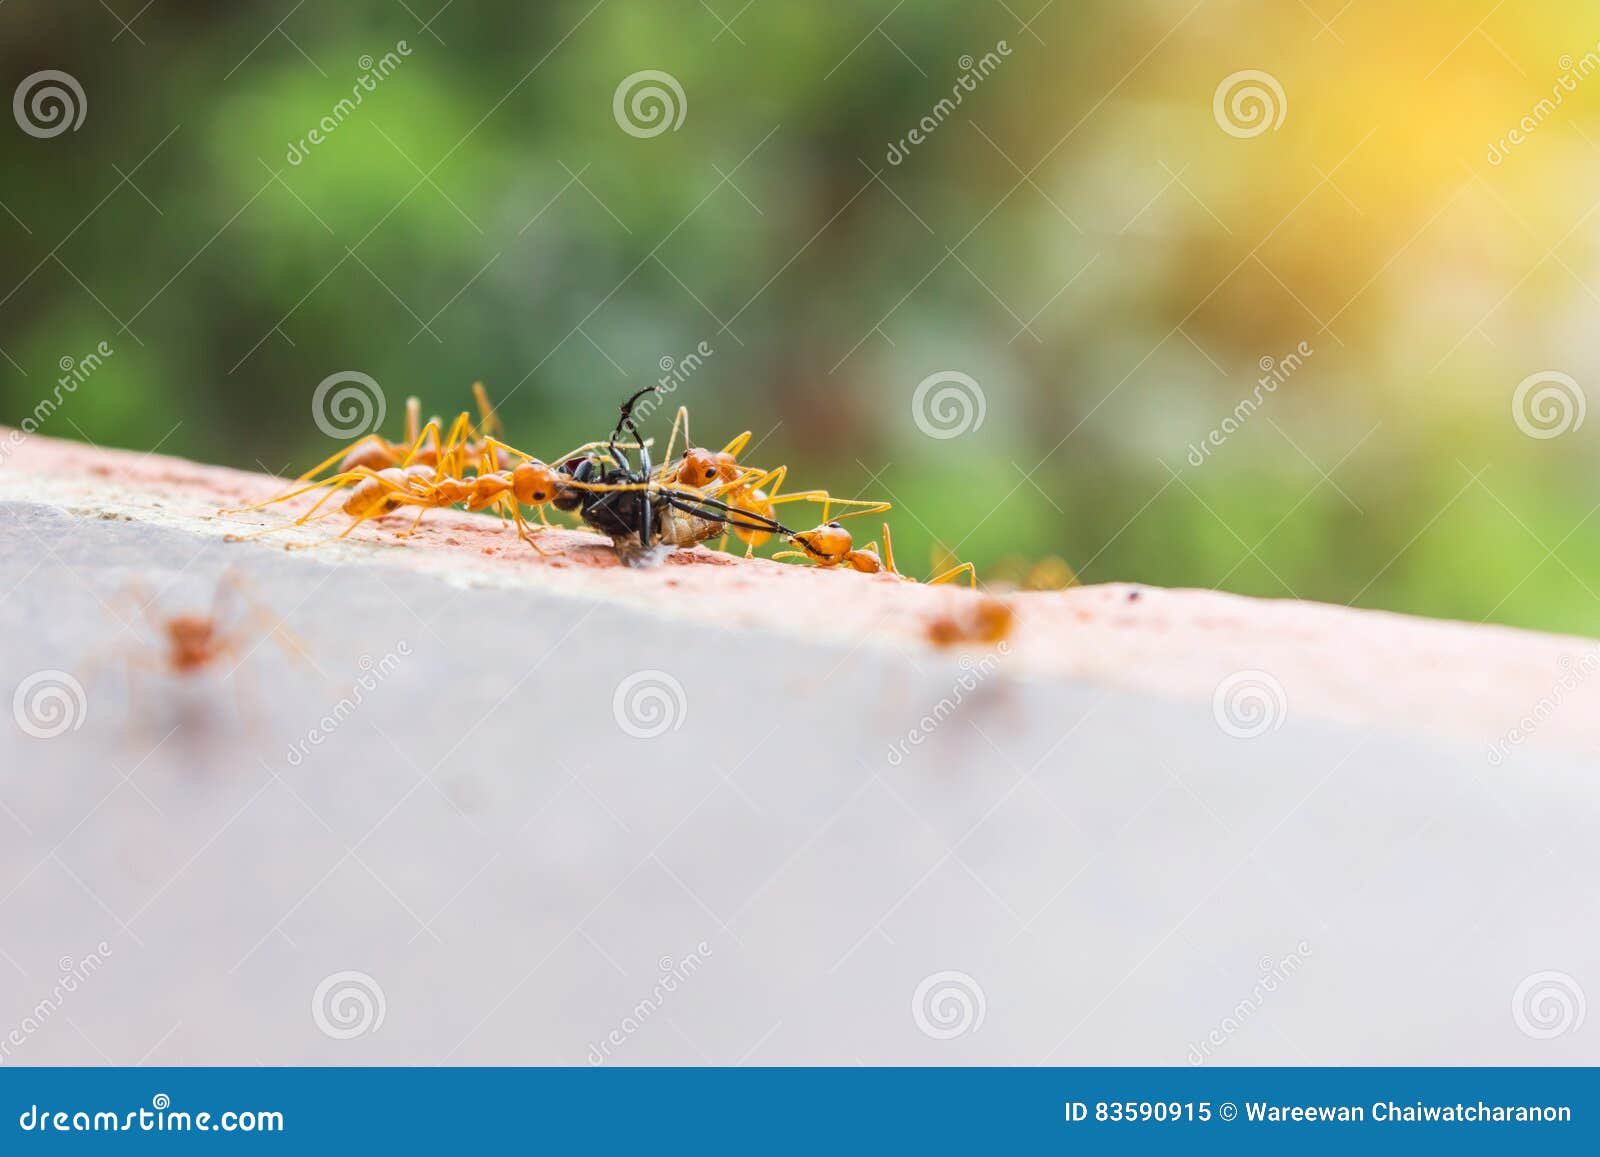 Pech komarnicy lub komarnica domu poświęcenie mrówki drużyną, luźny flyhouse